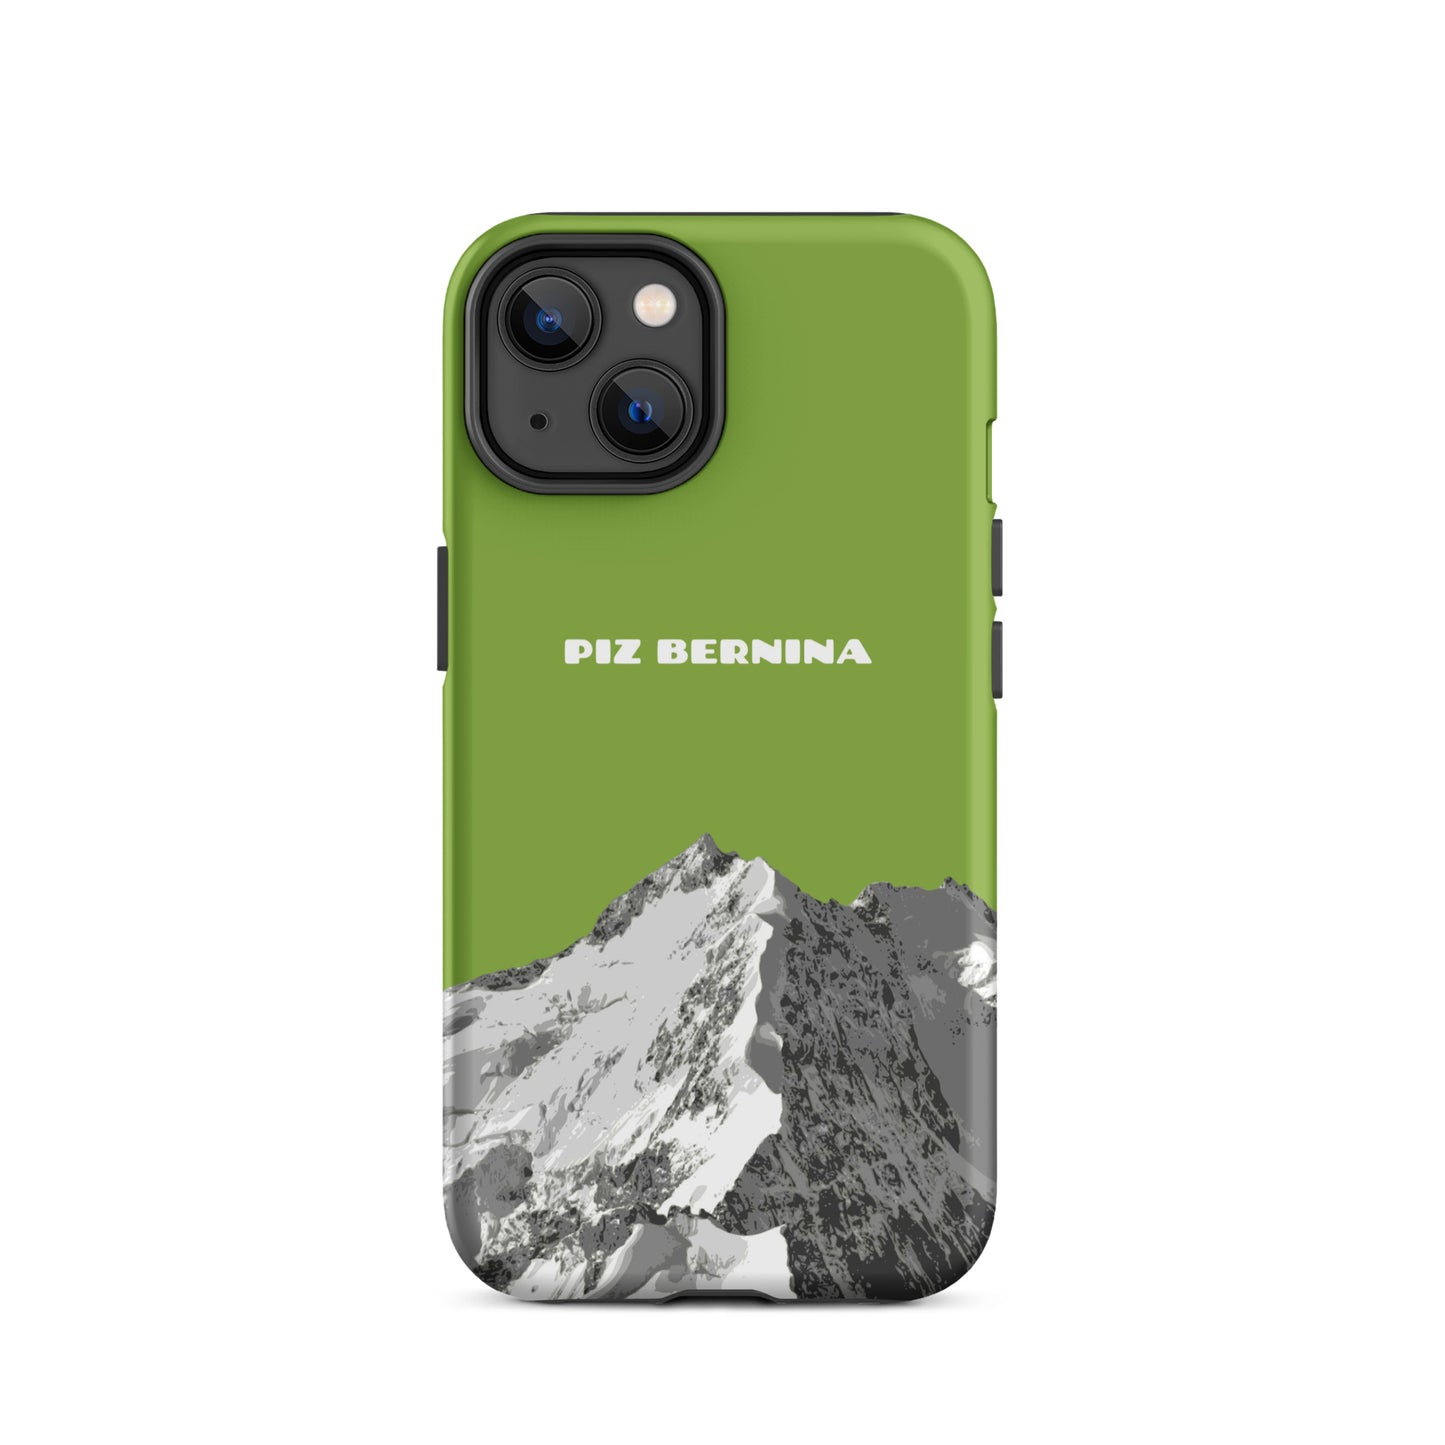 Hülle für das iPhone 14 von Apple in der Farbe Gelbgrün, dass den Piz Bernina in Graubünden zeigt.